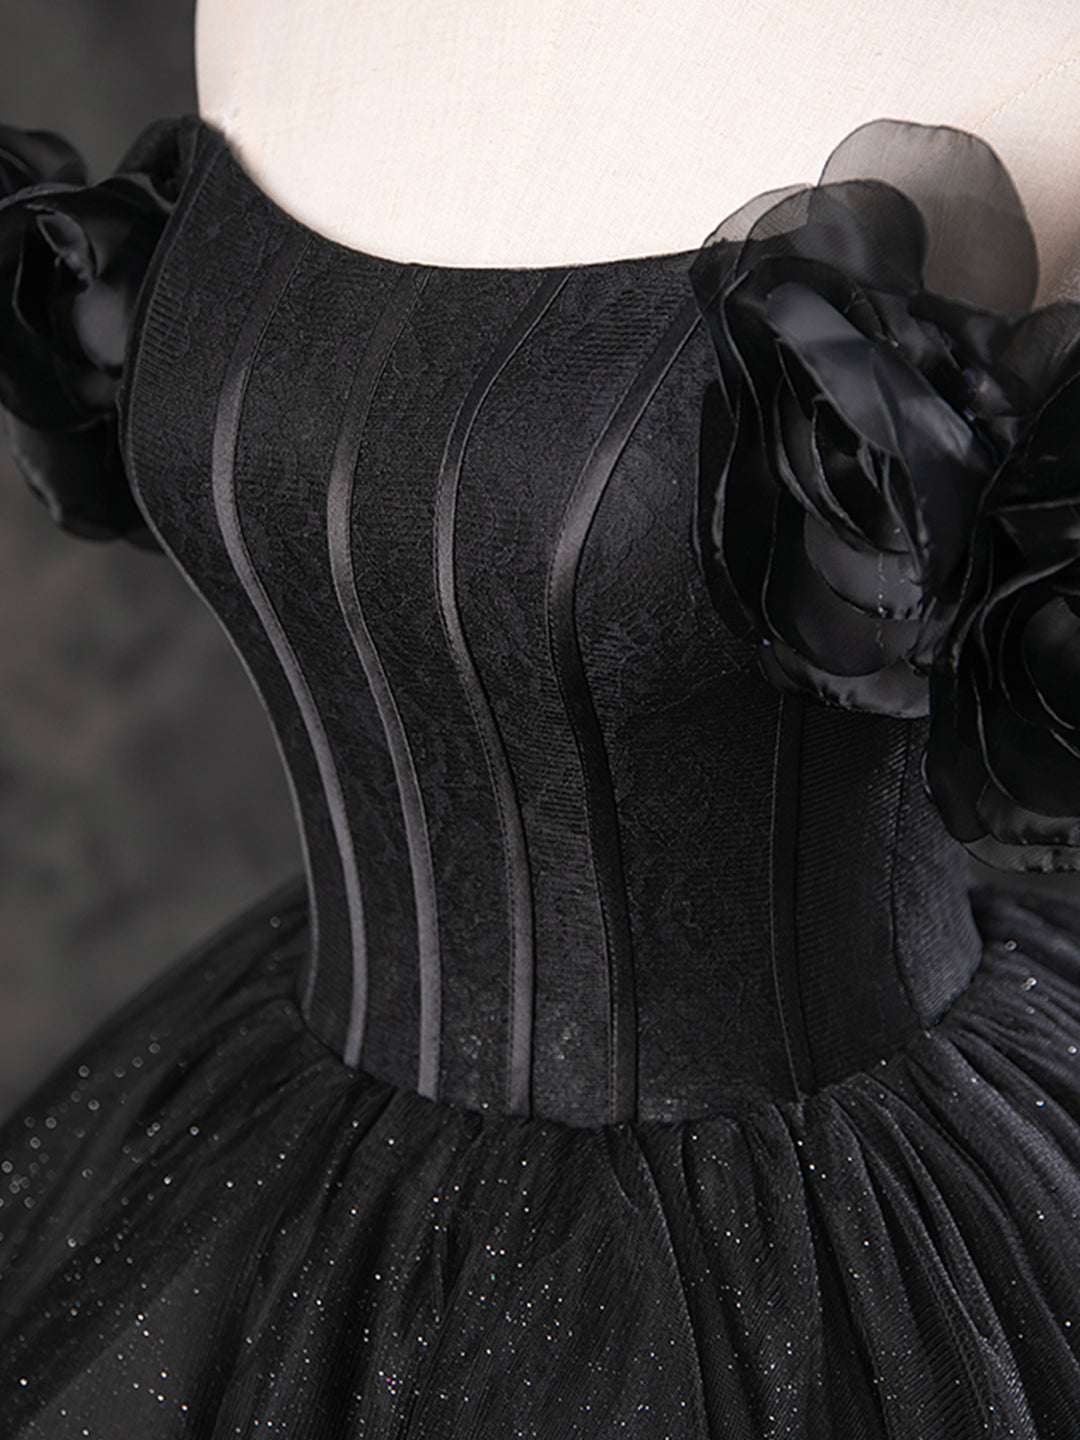 Prom Dress Red, Black Sparkly Tulle Off the Shoulder Long Formal Dress, Elegant A-Line Black Evening Party Dress